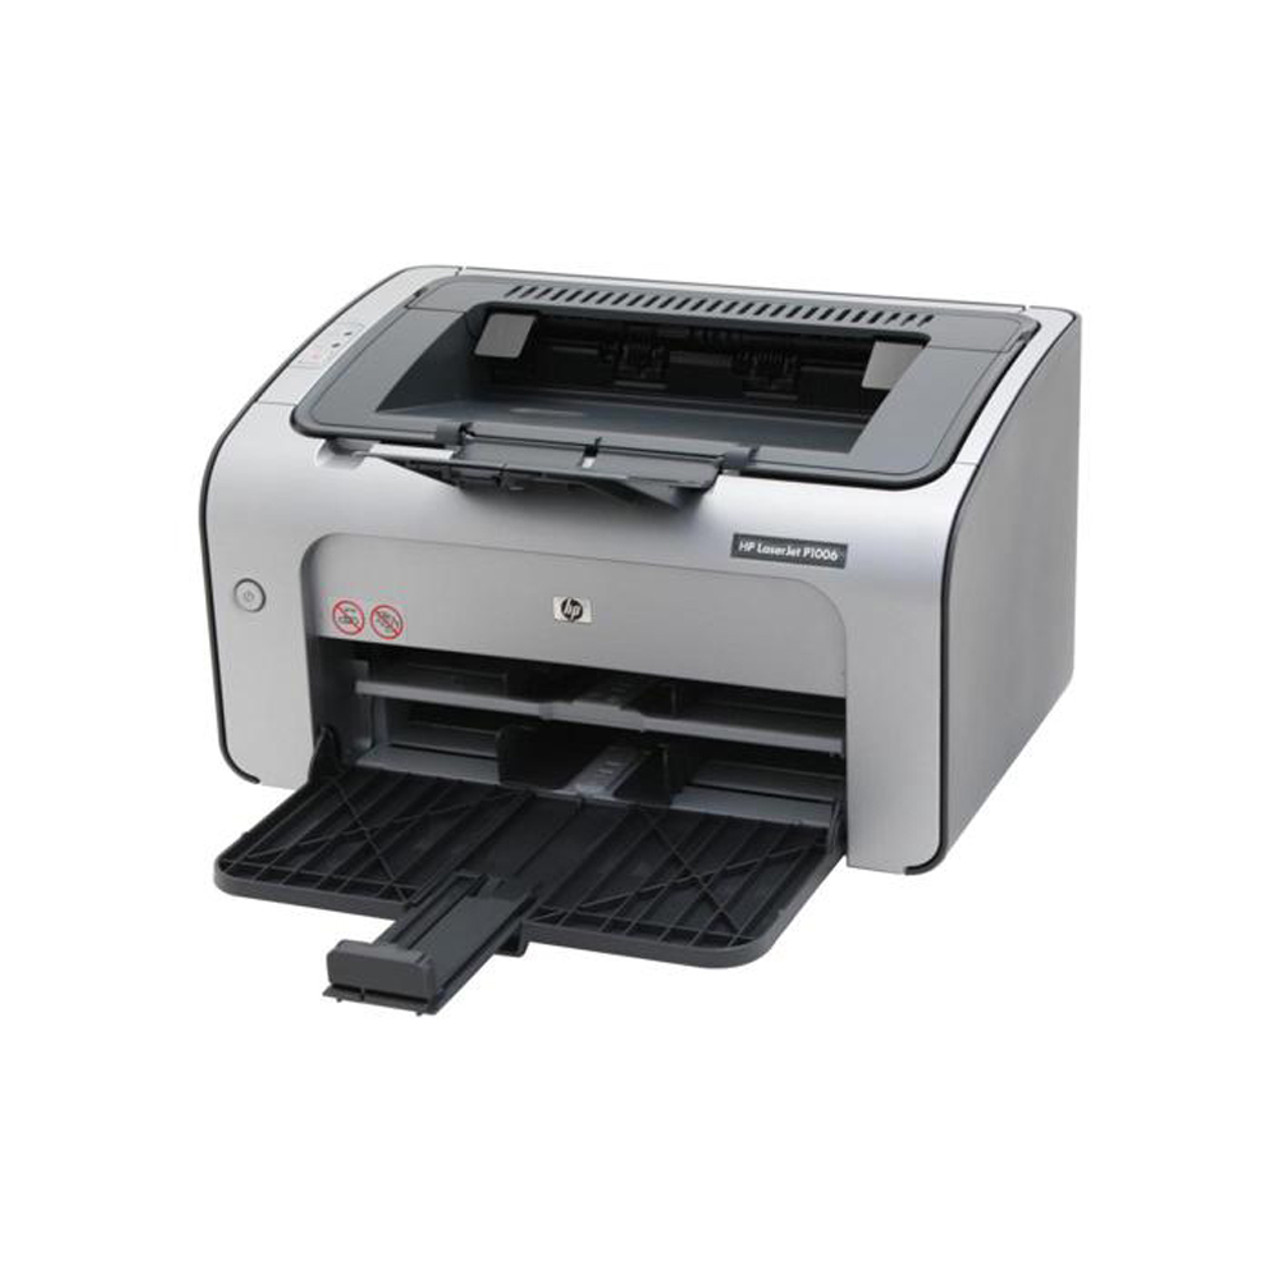 LaserJet P1500 Printer series